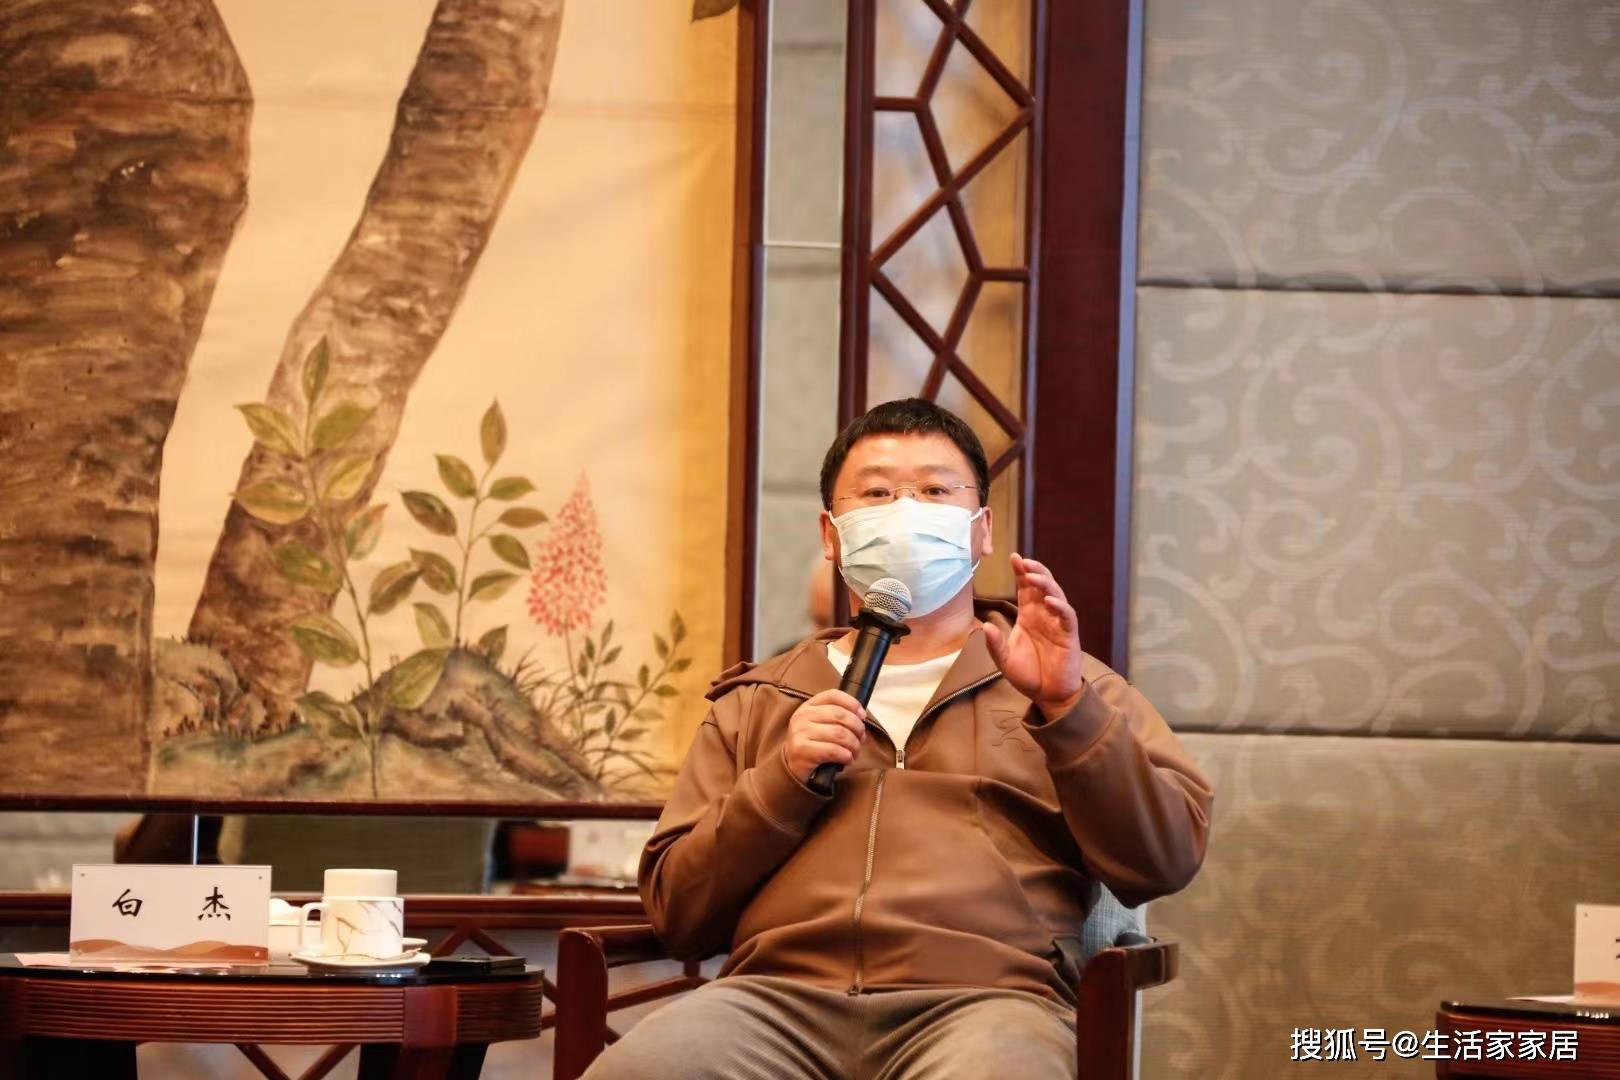 生活家家居集团董事长白杰受邀出席成都锦江区区长咖啡活动